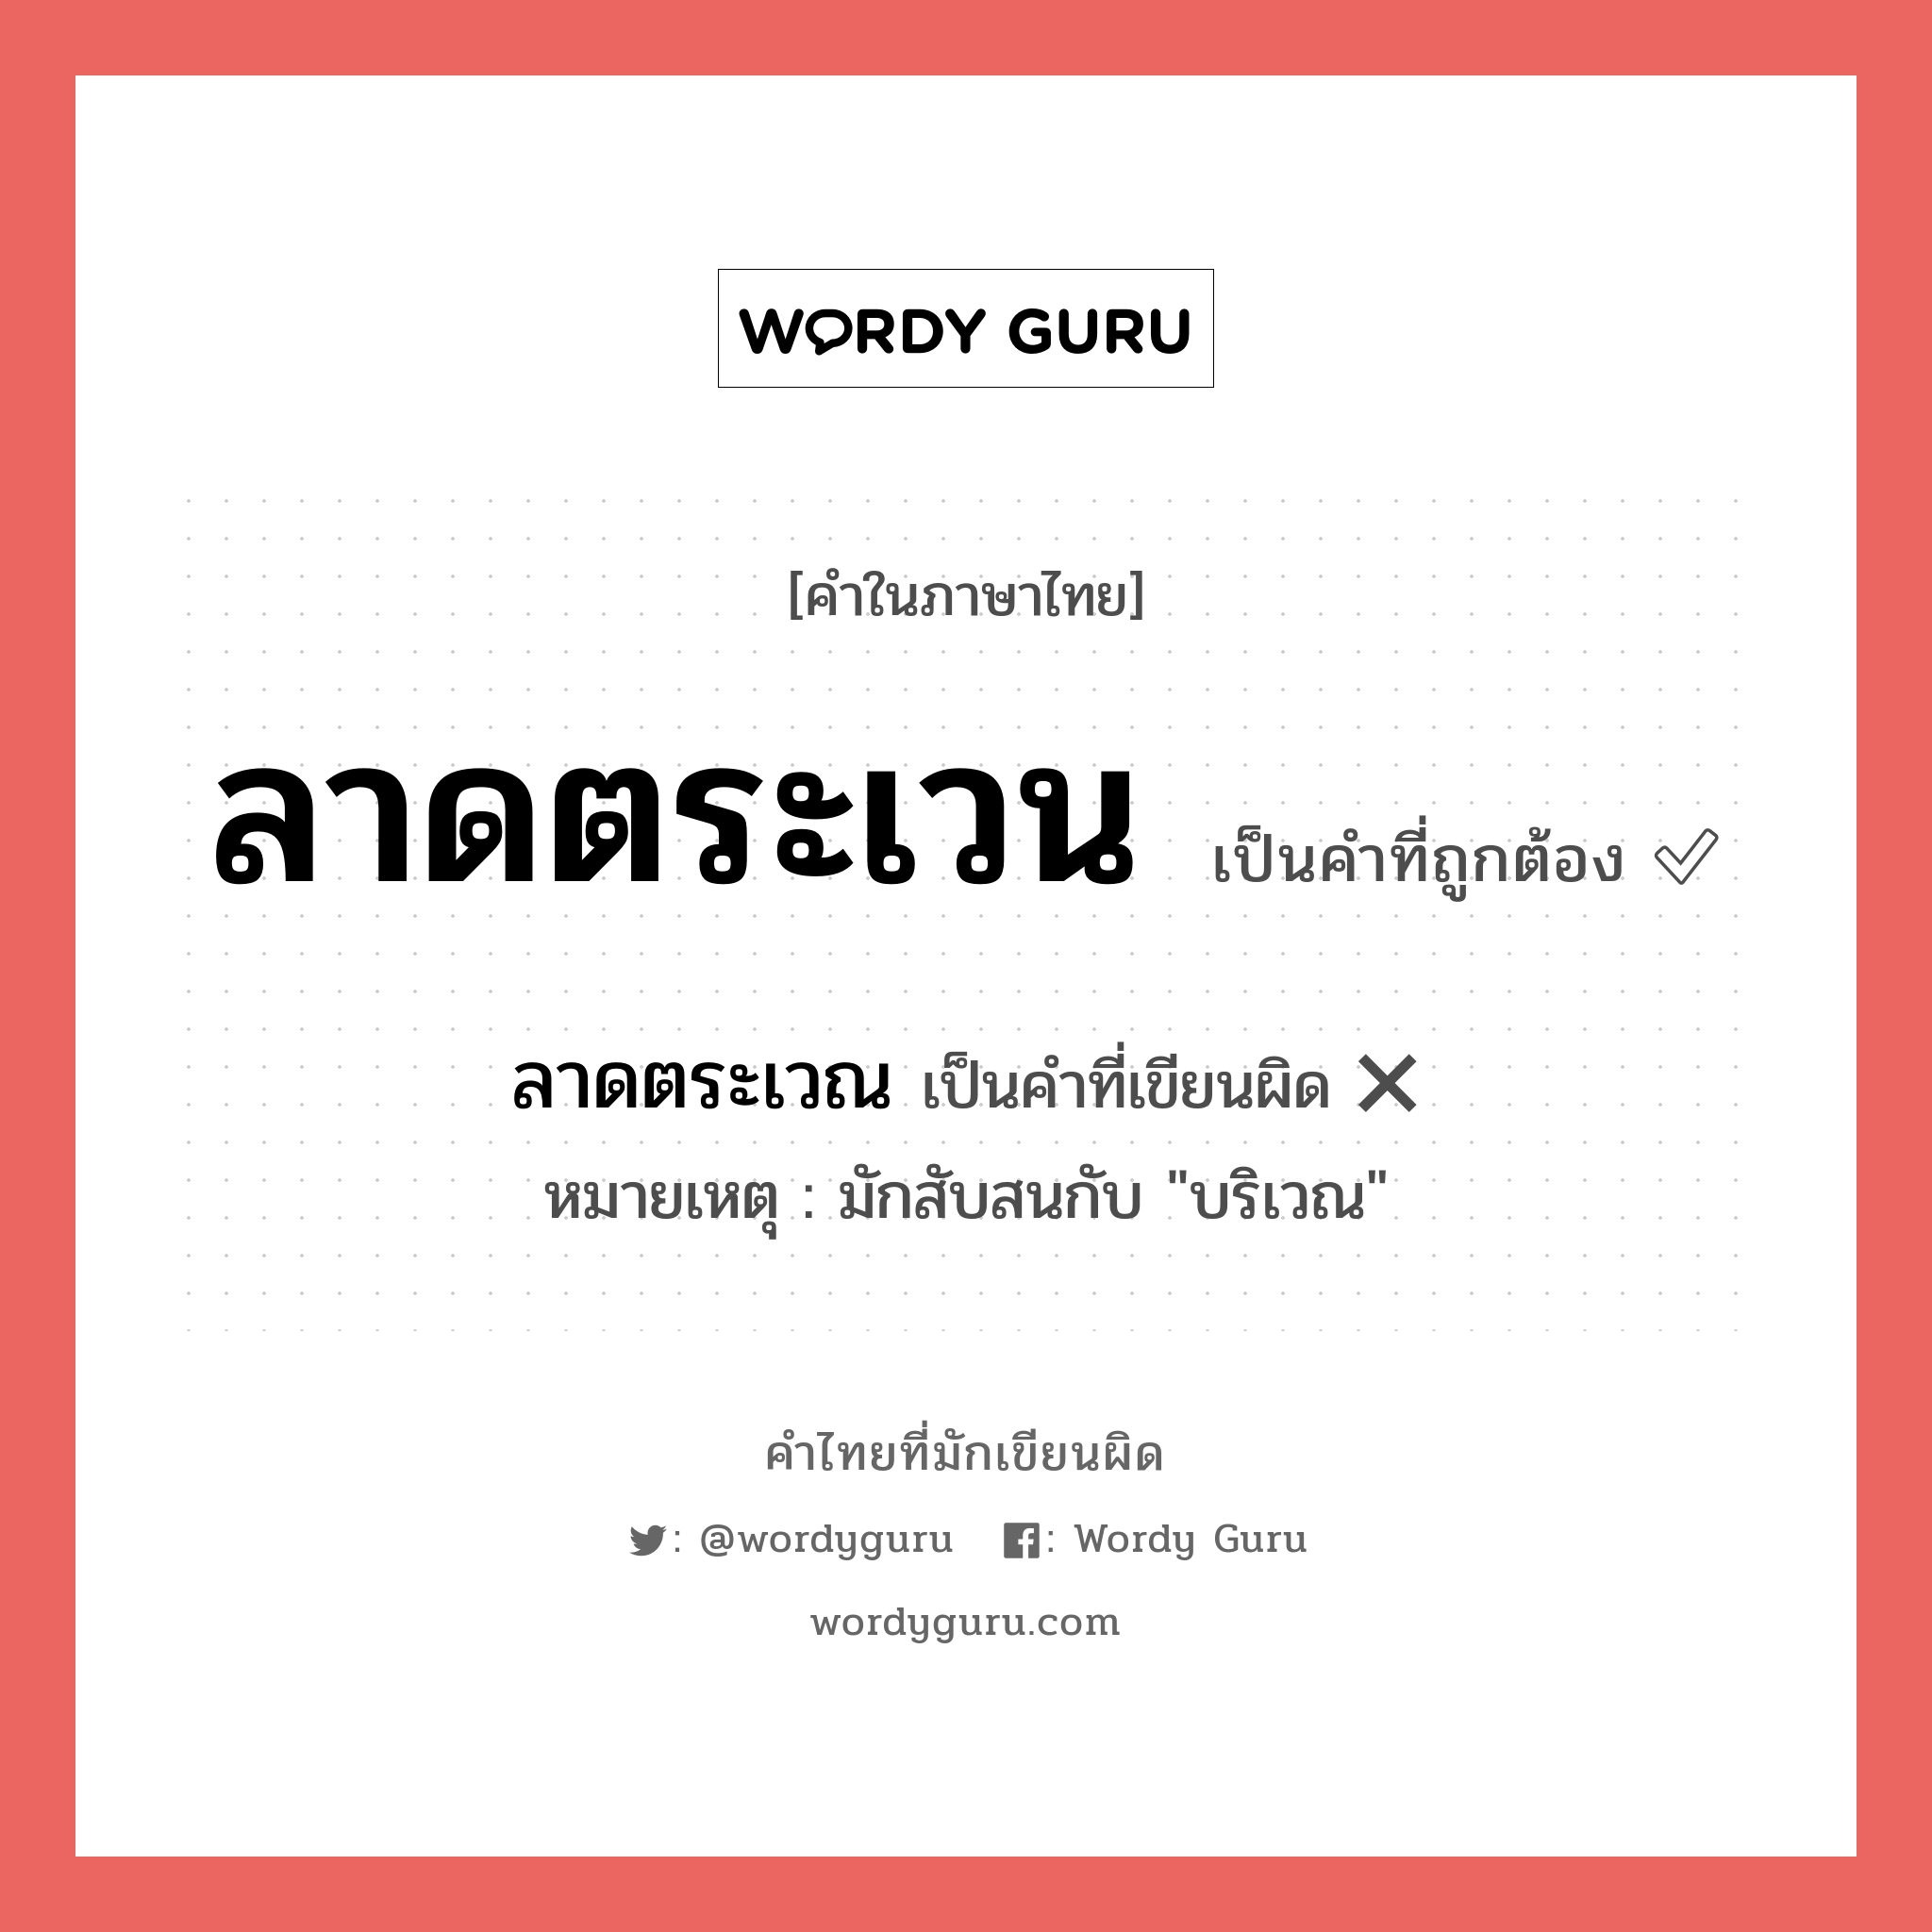 ลาดตระเวน หรือ ลาดตระเวณ คำไหนเขียนถูก?, คำในภาษาไทยที่มักเขียนผิด ลาดตระเวน คำที่ผิด ❌ ลาดตระเวณ หมายเหตุ มักสับสนกับ "บริเวณ"